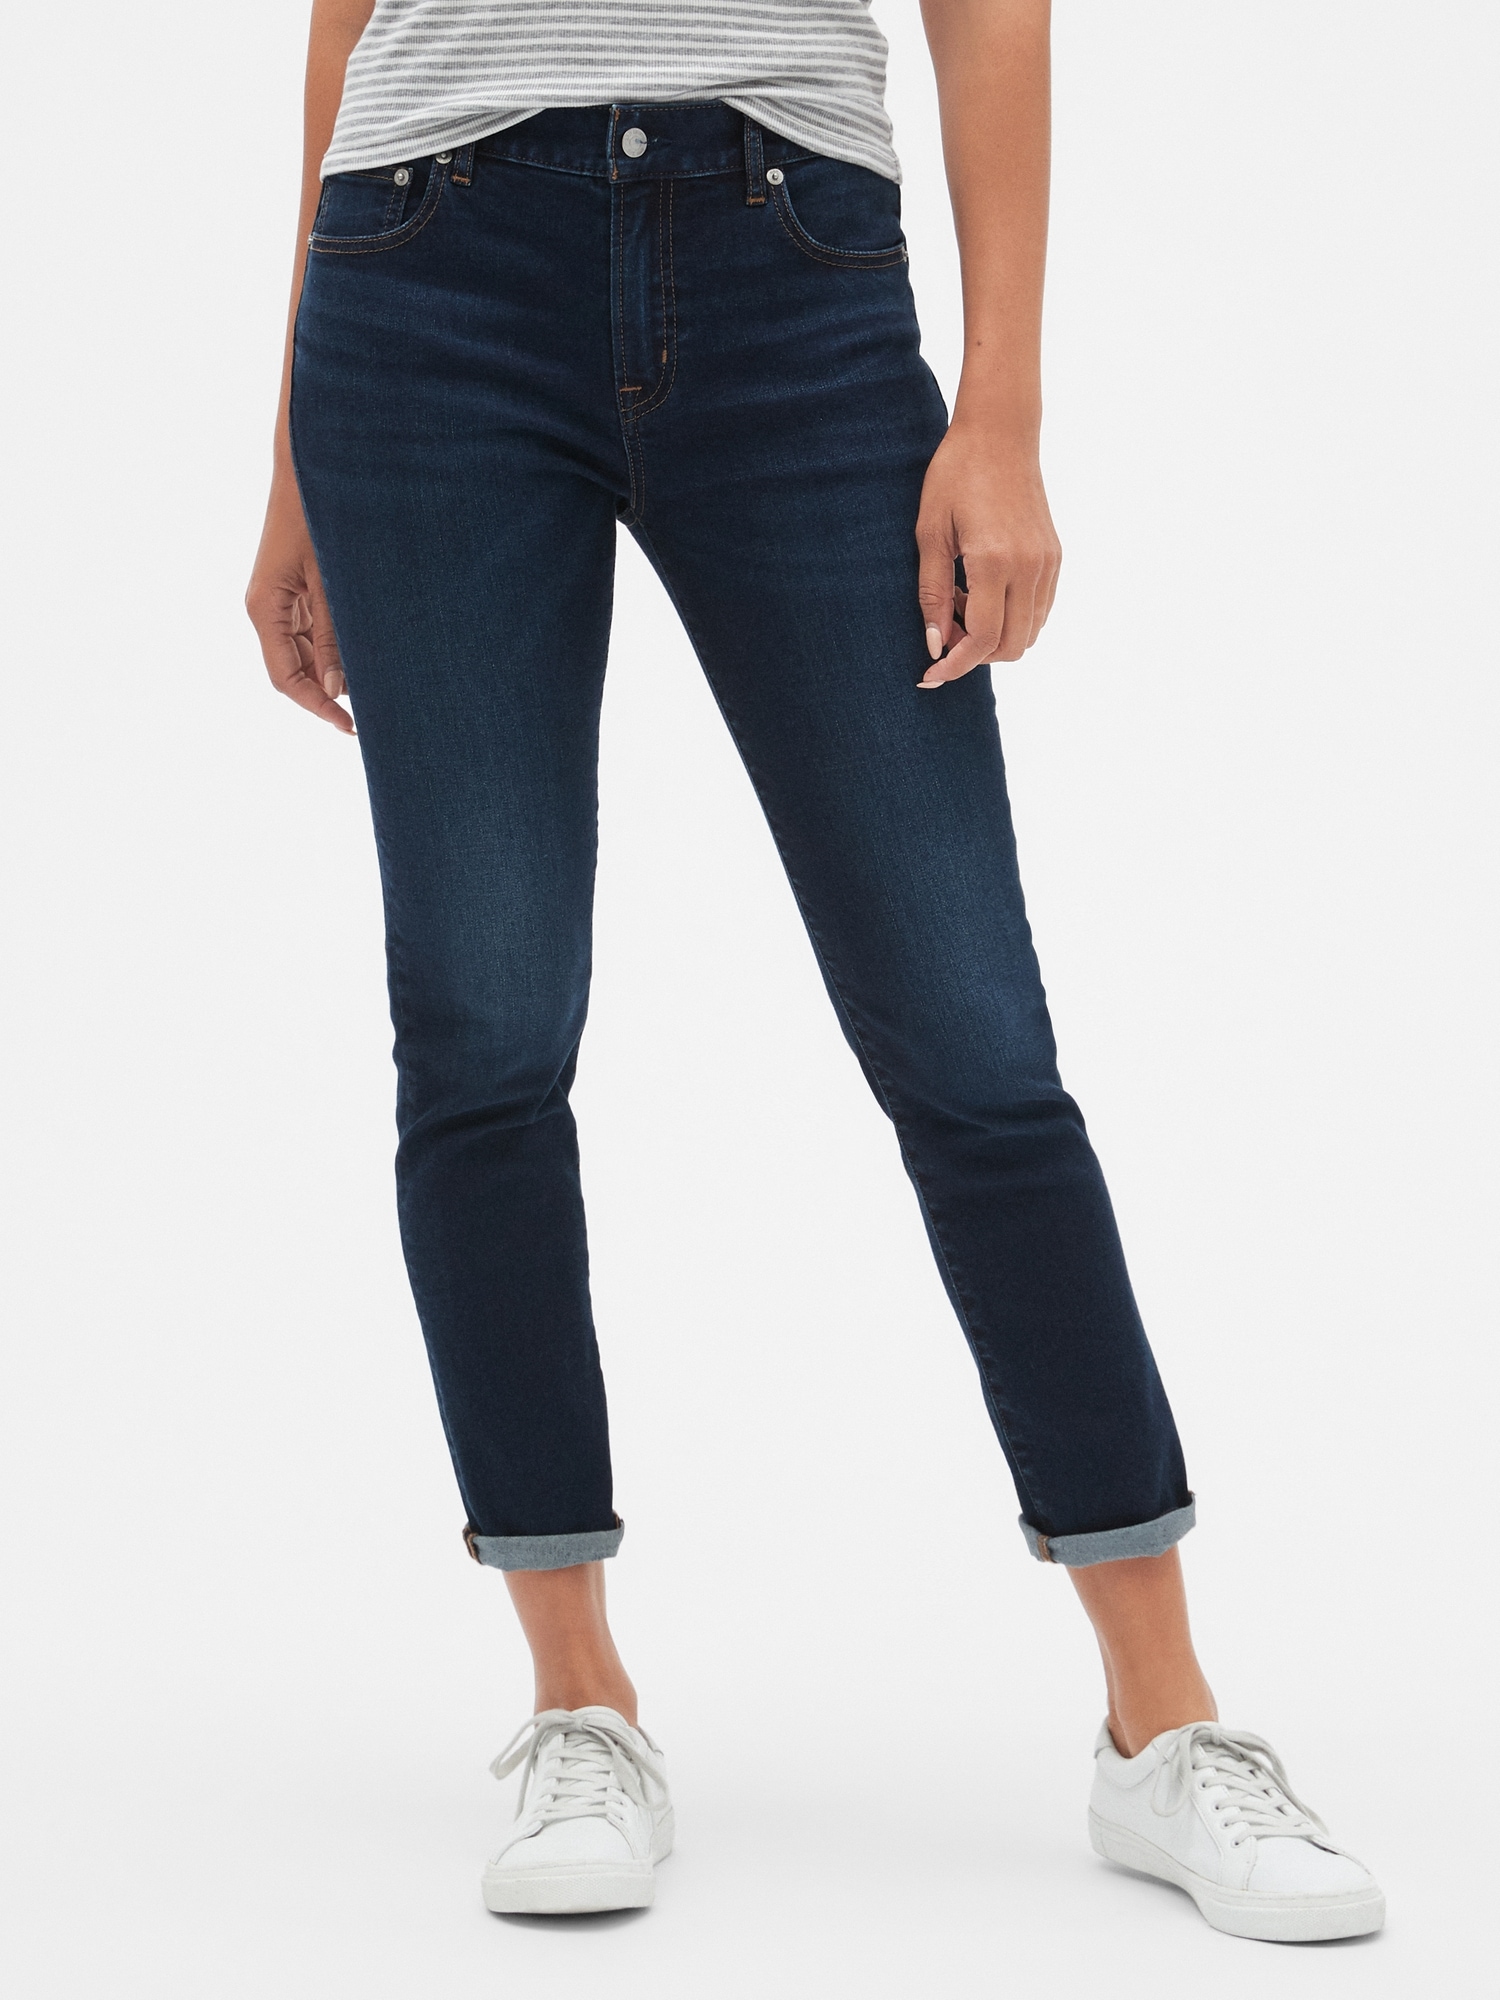 gap best girlfriend jeans